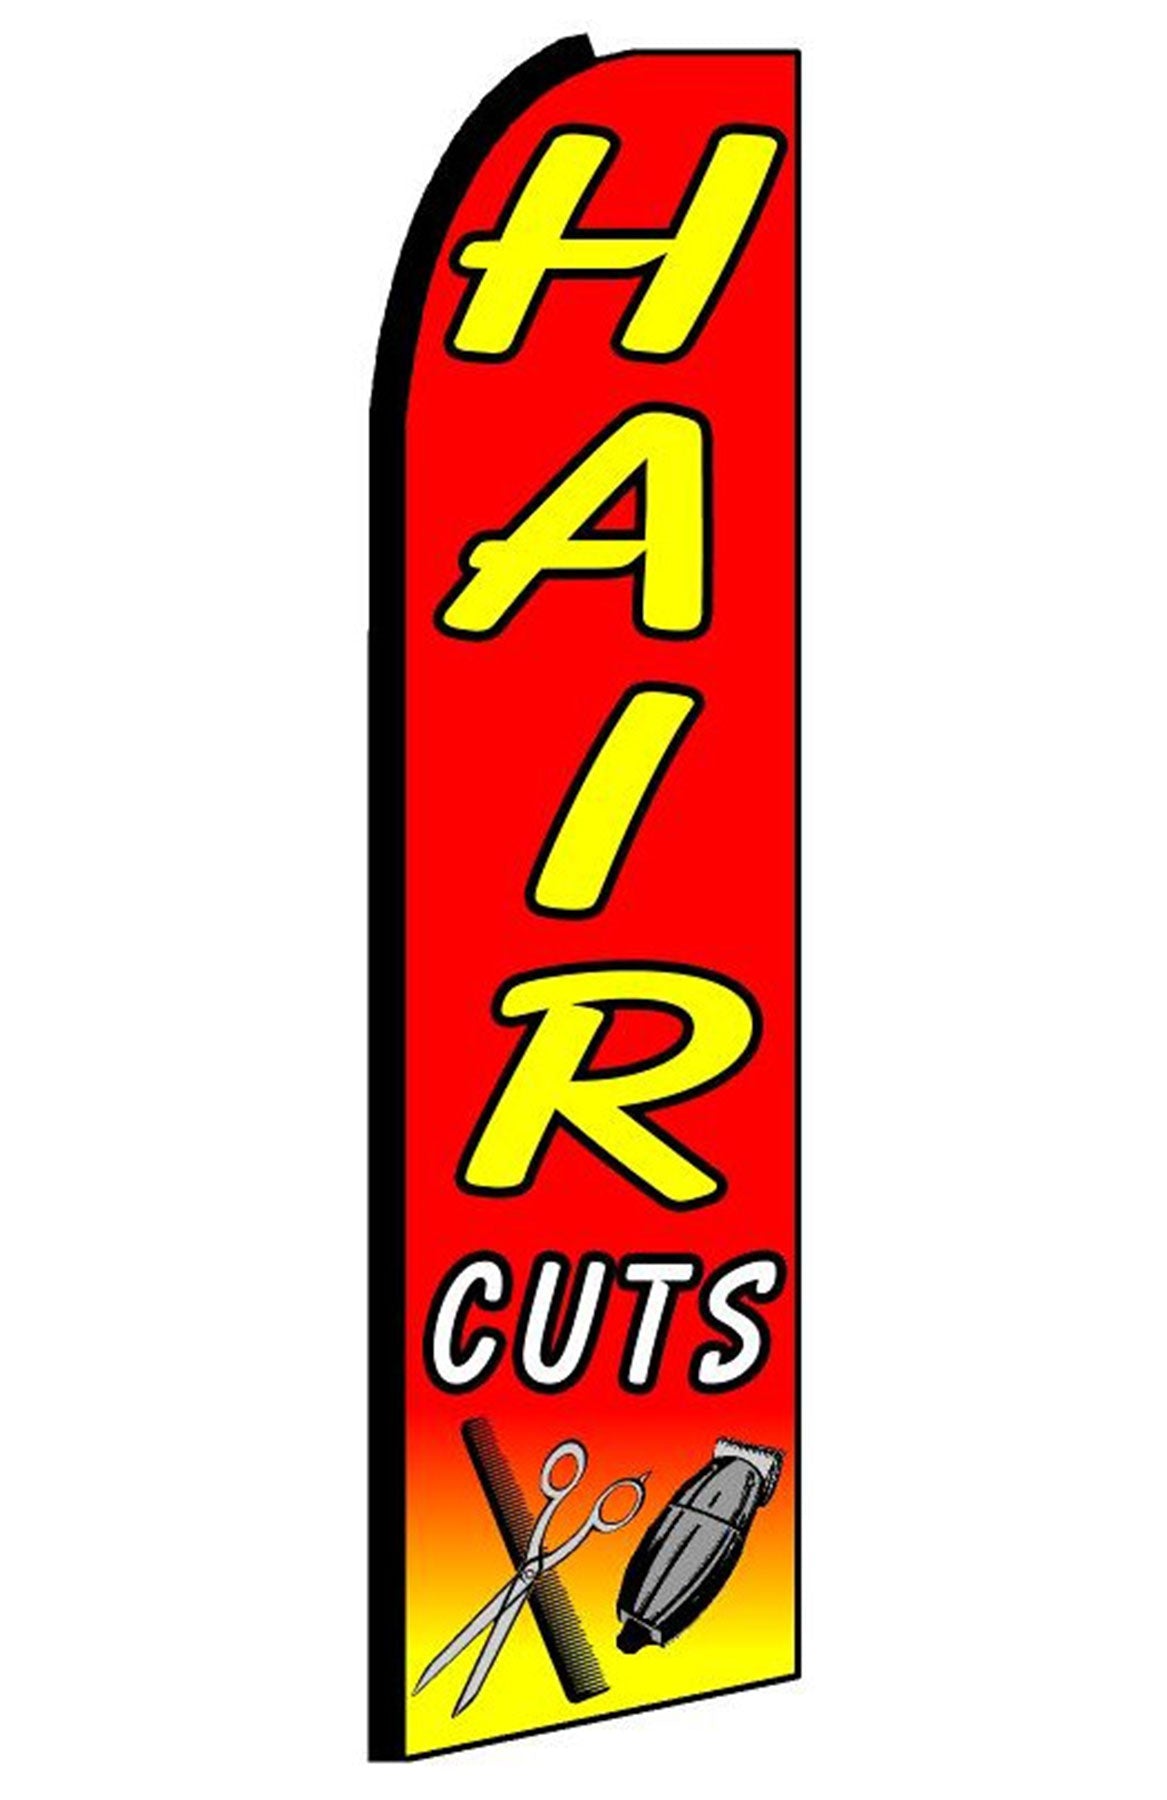 Hair Cuts